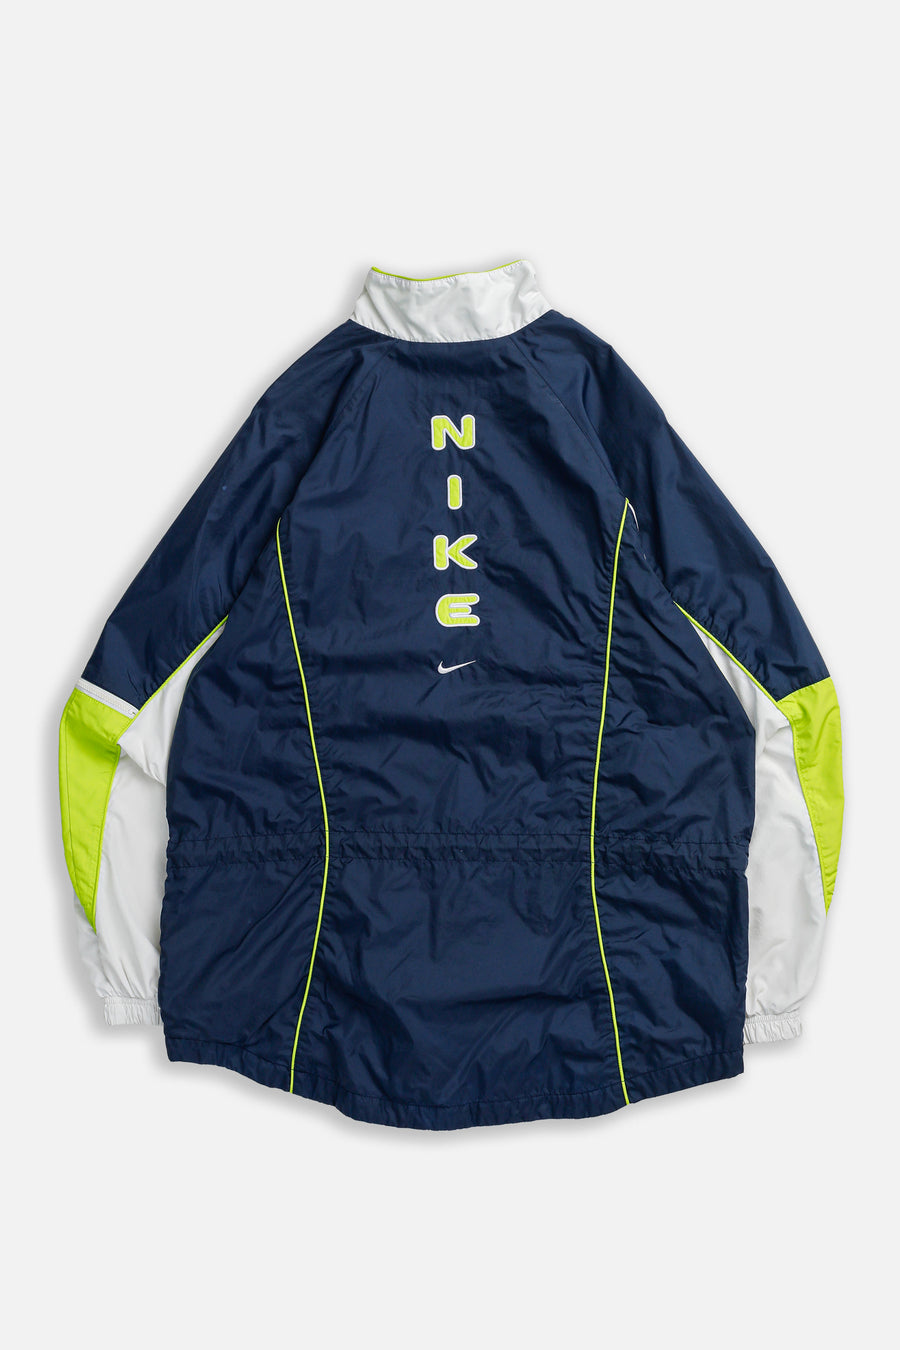 Vintage Nike Windbreaker Jacket - Women's M